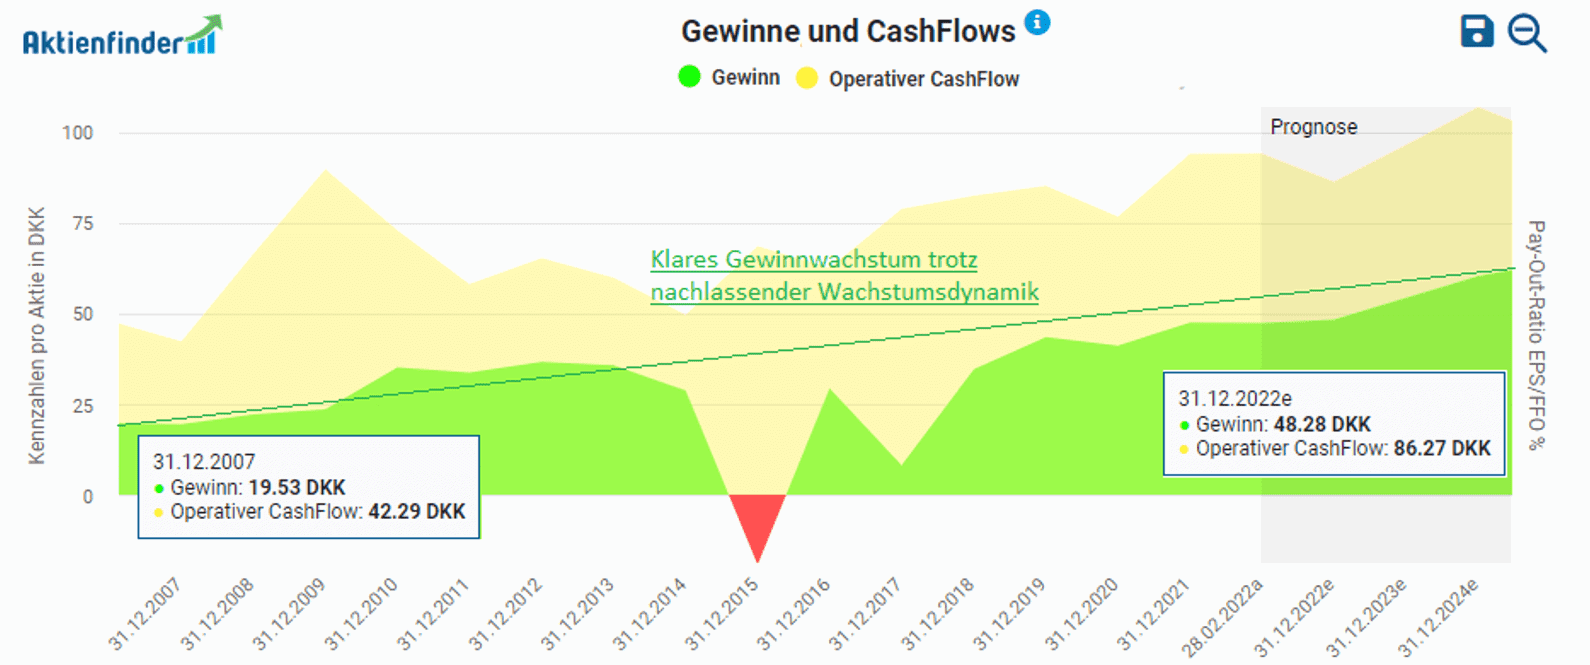 Entwicklung der Gewinne und des operativen Cashflows von Carlsberg im Aktienfinder